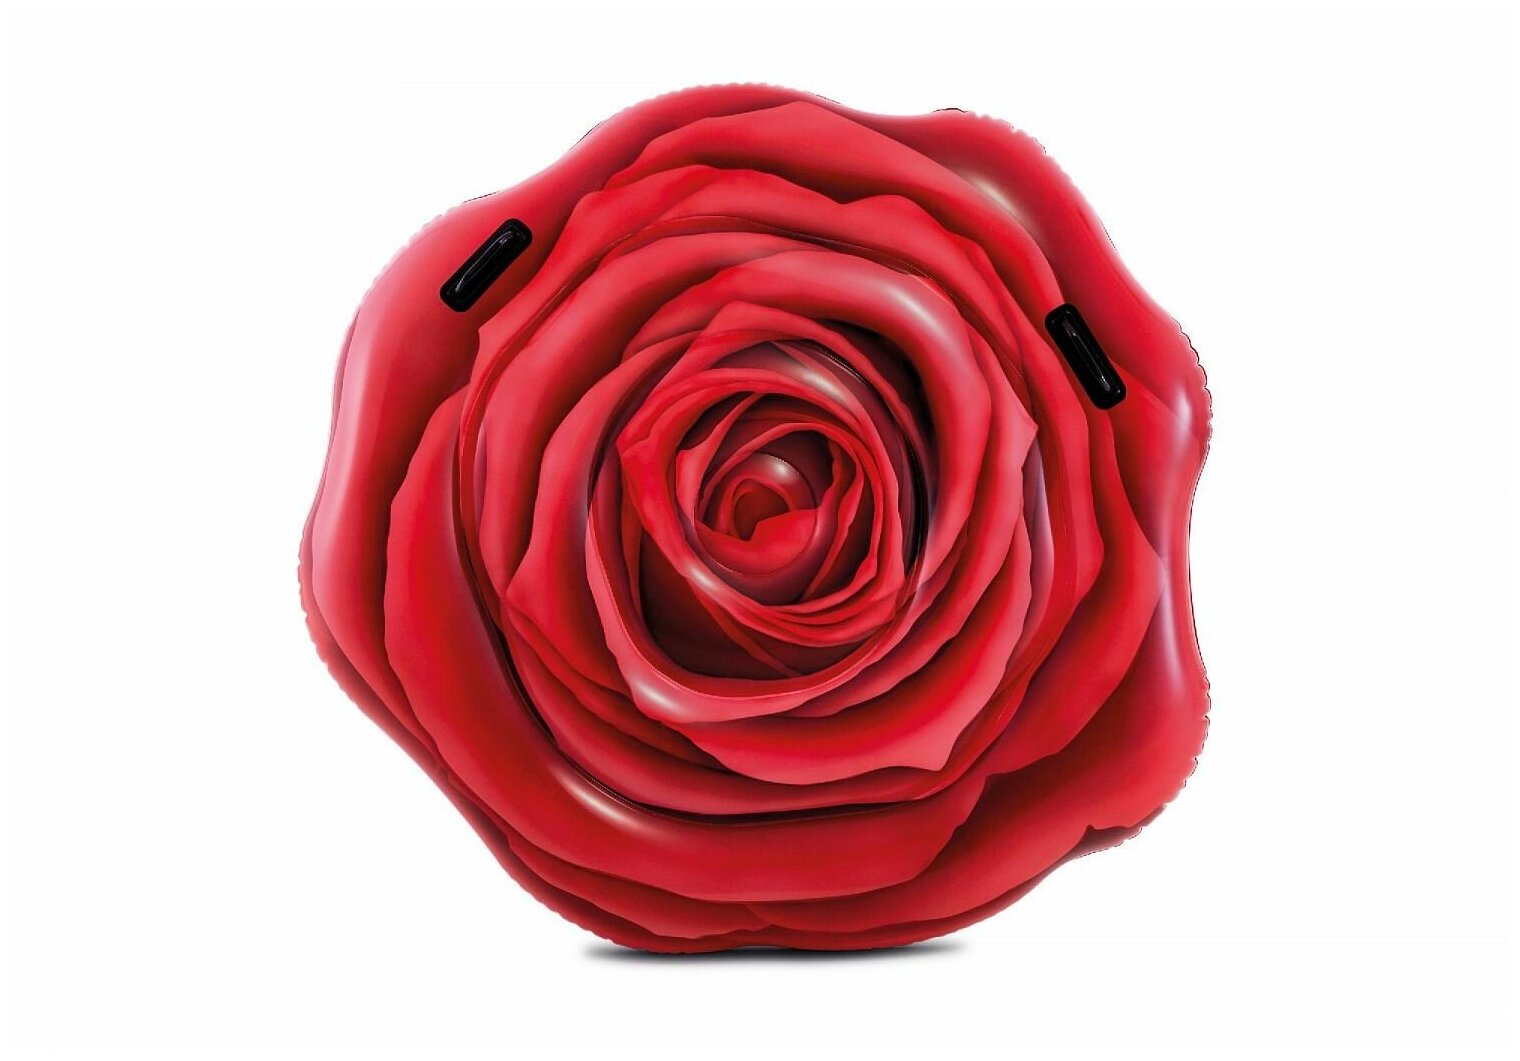 Надувной матрас-плот Красная Роза, 127х119х24 см